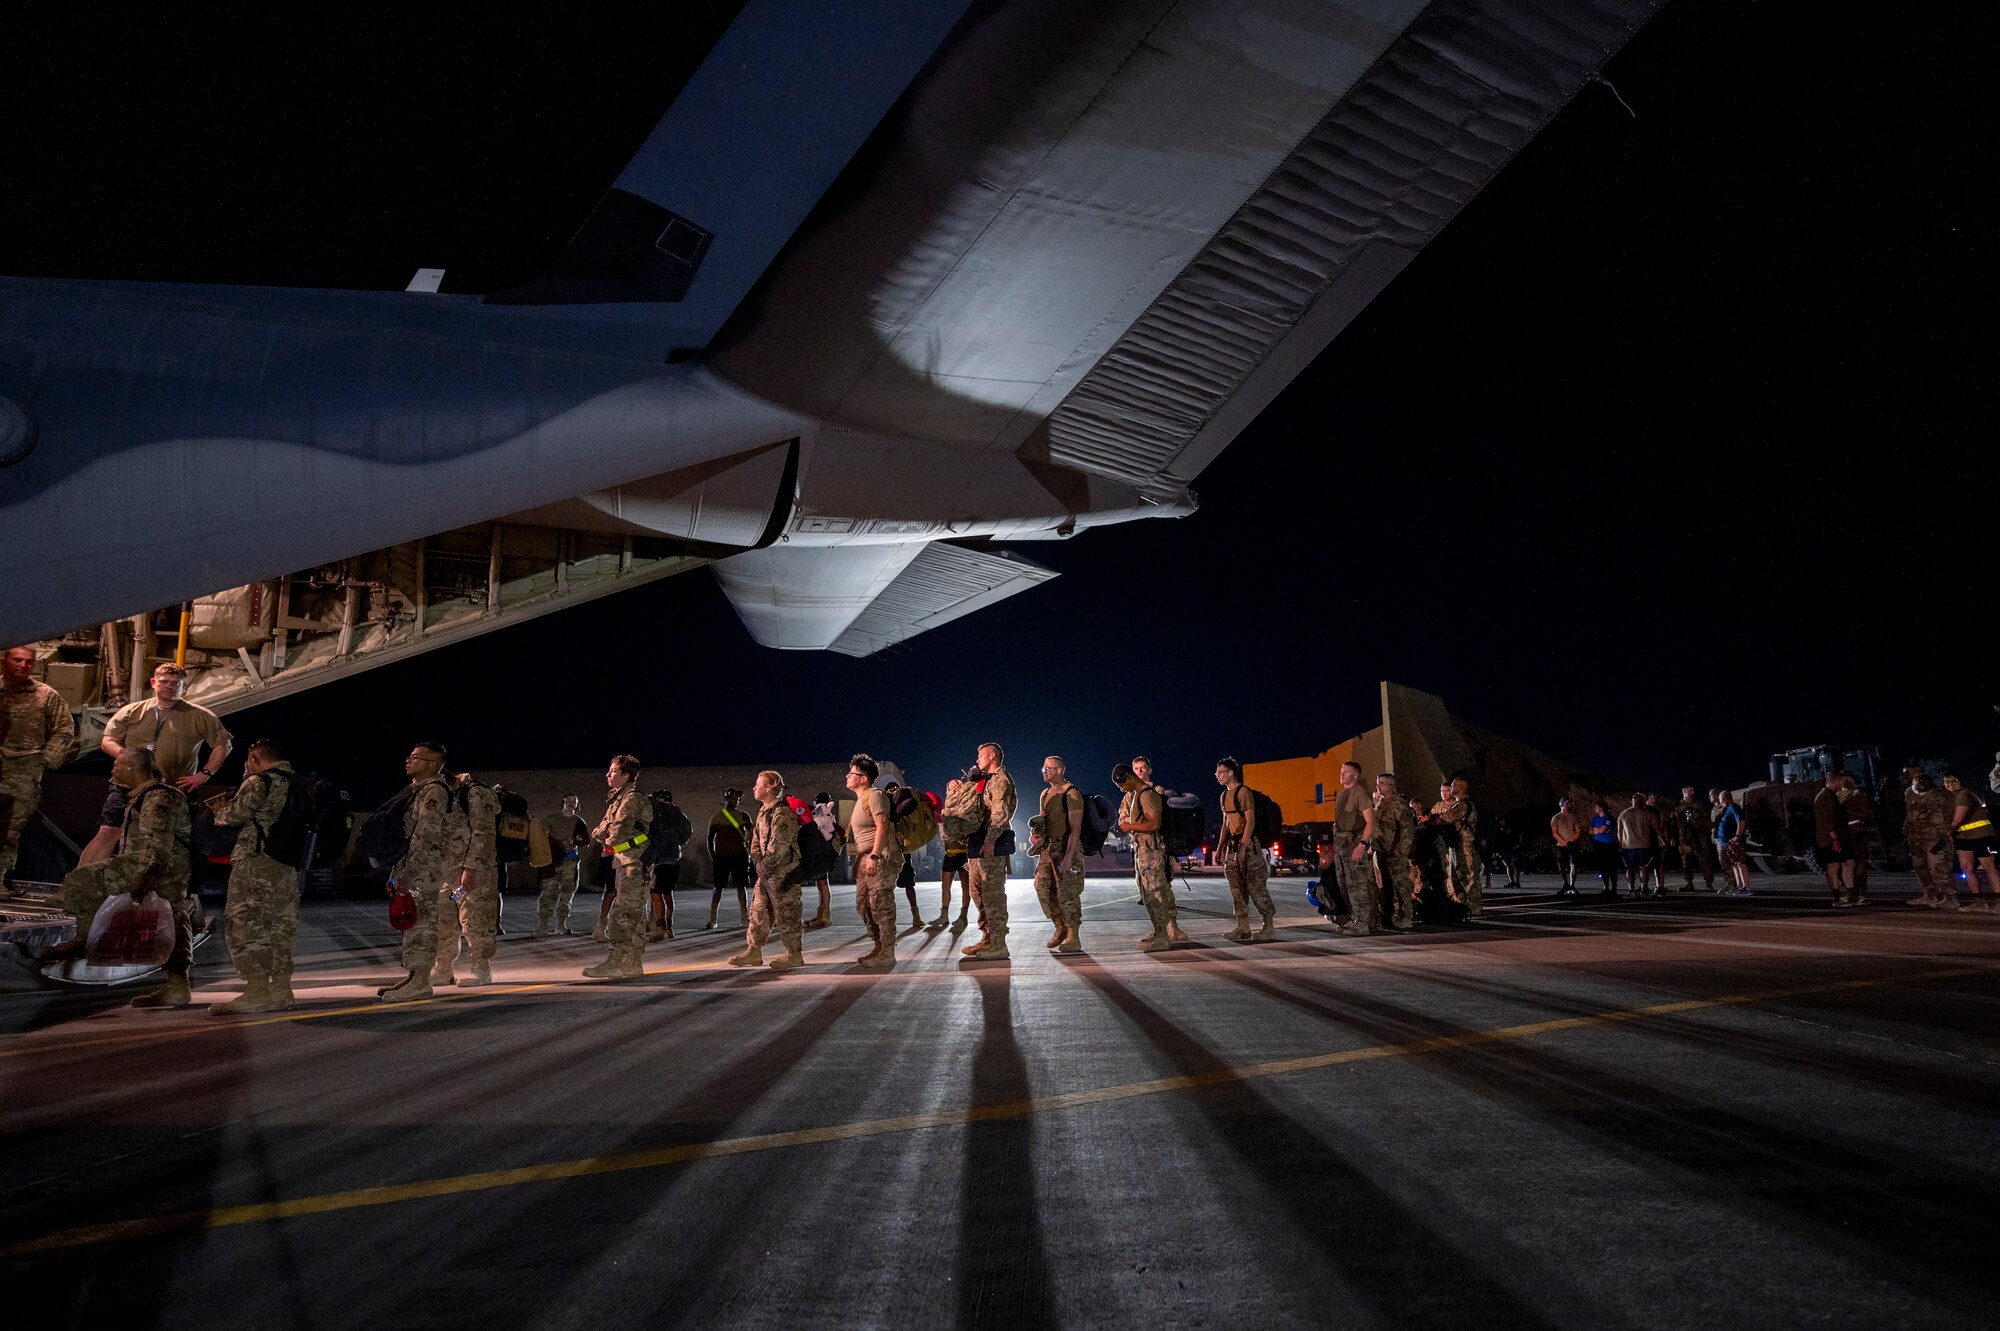 Airmen onload onto a U.S. Air Force aircraft